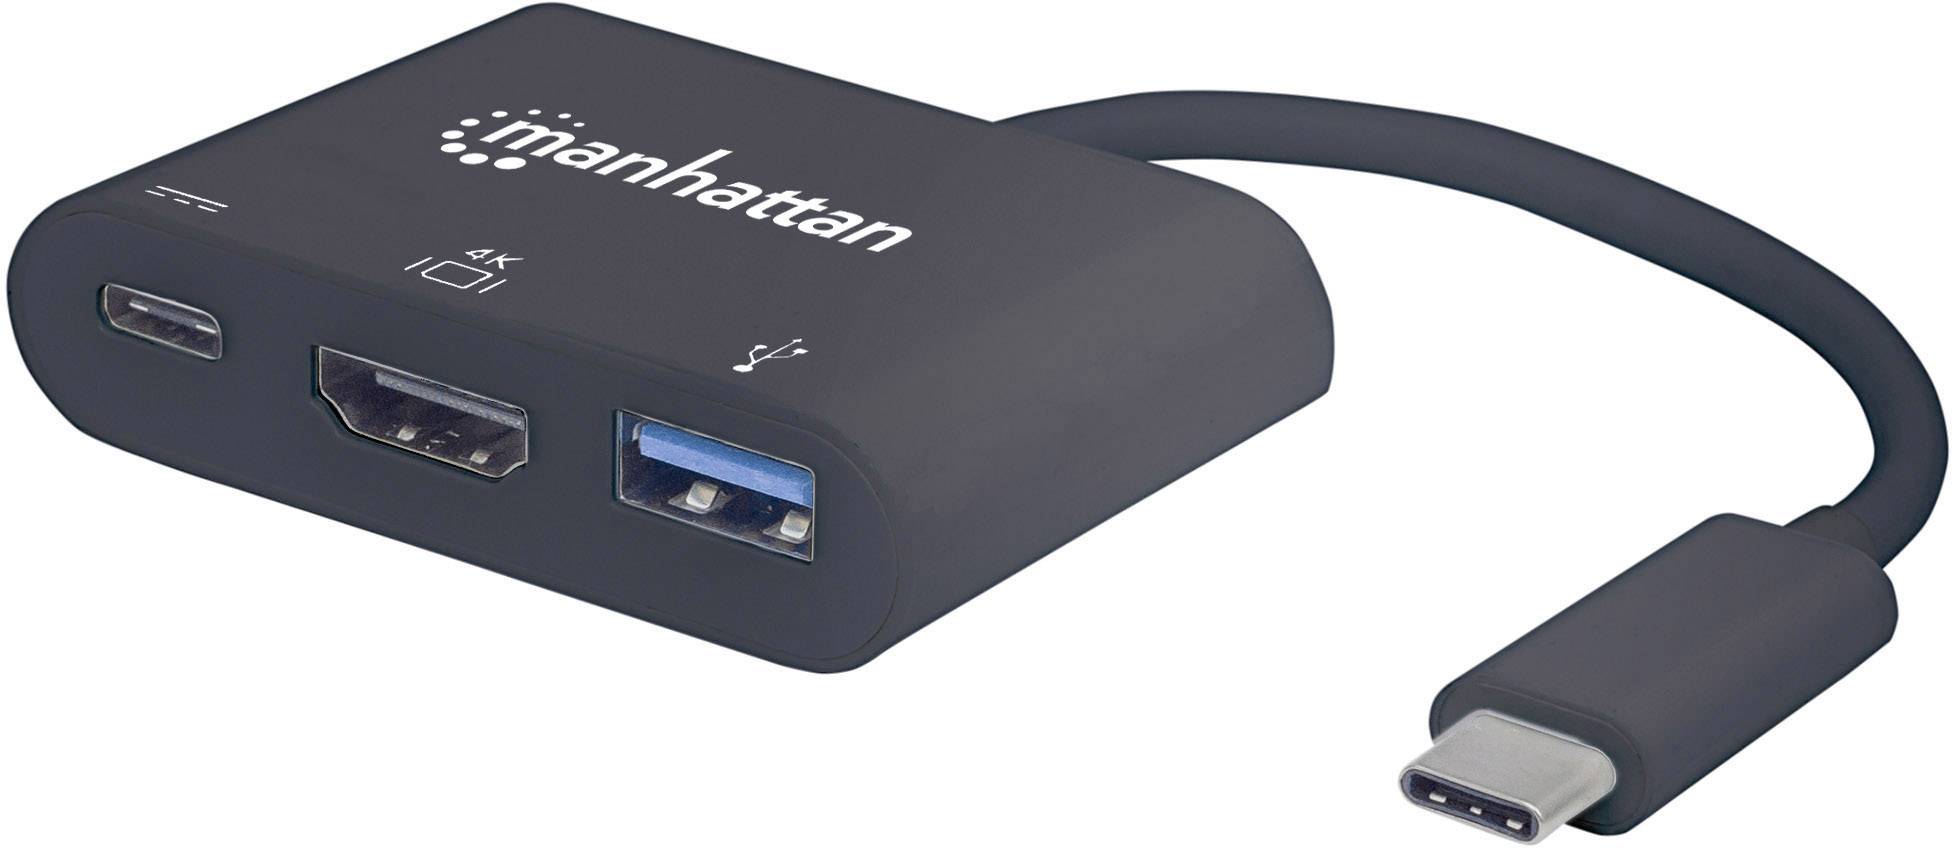 MANHATTAN USB Typ C HDMI Dock-Konverter USB 3.1 Typ C-Stecker auf HDMI USB Typ A-Buchse und USB Typ